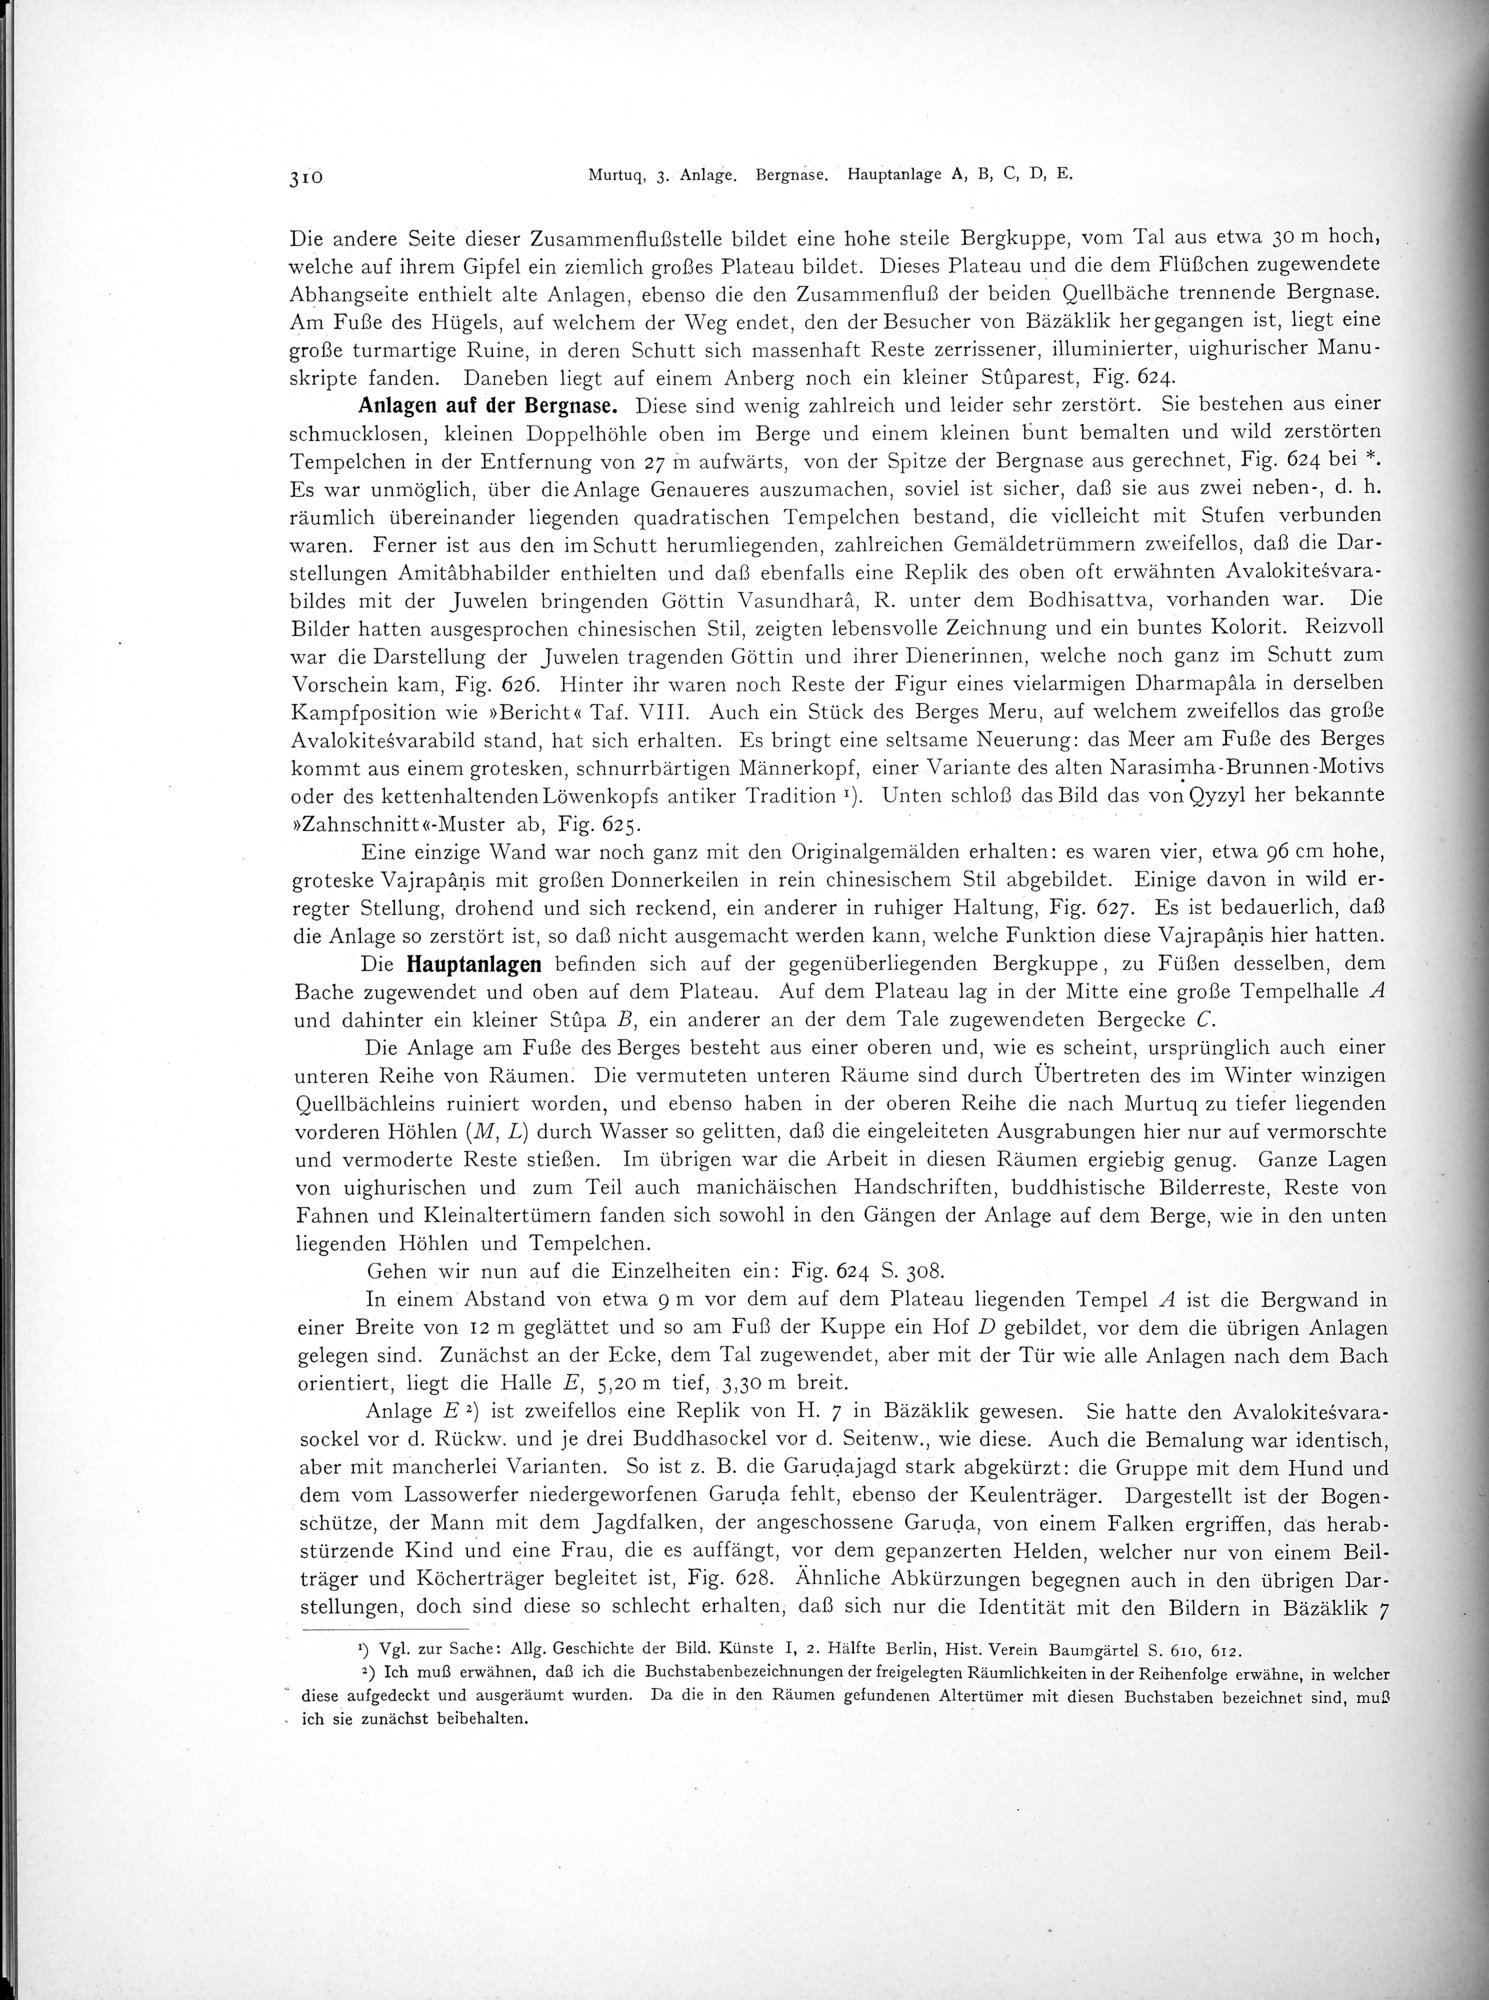 Altbuddhistische Kultstätten in Chinesisch-Turkistan : vol.1 / Page 316 (Grayscale High Resolution Image)